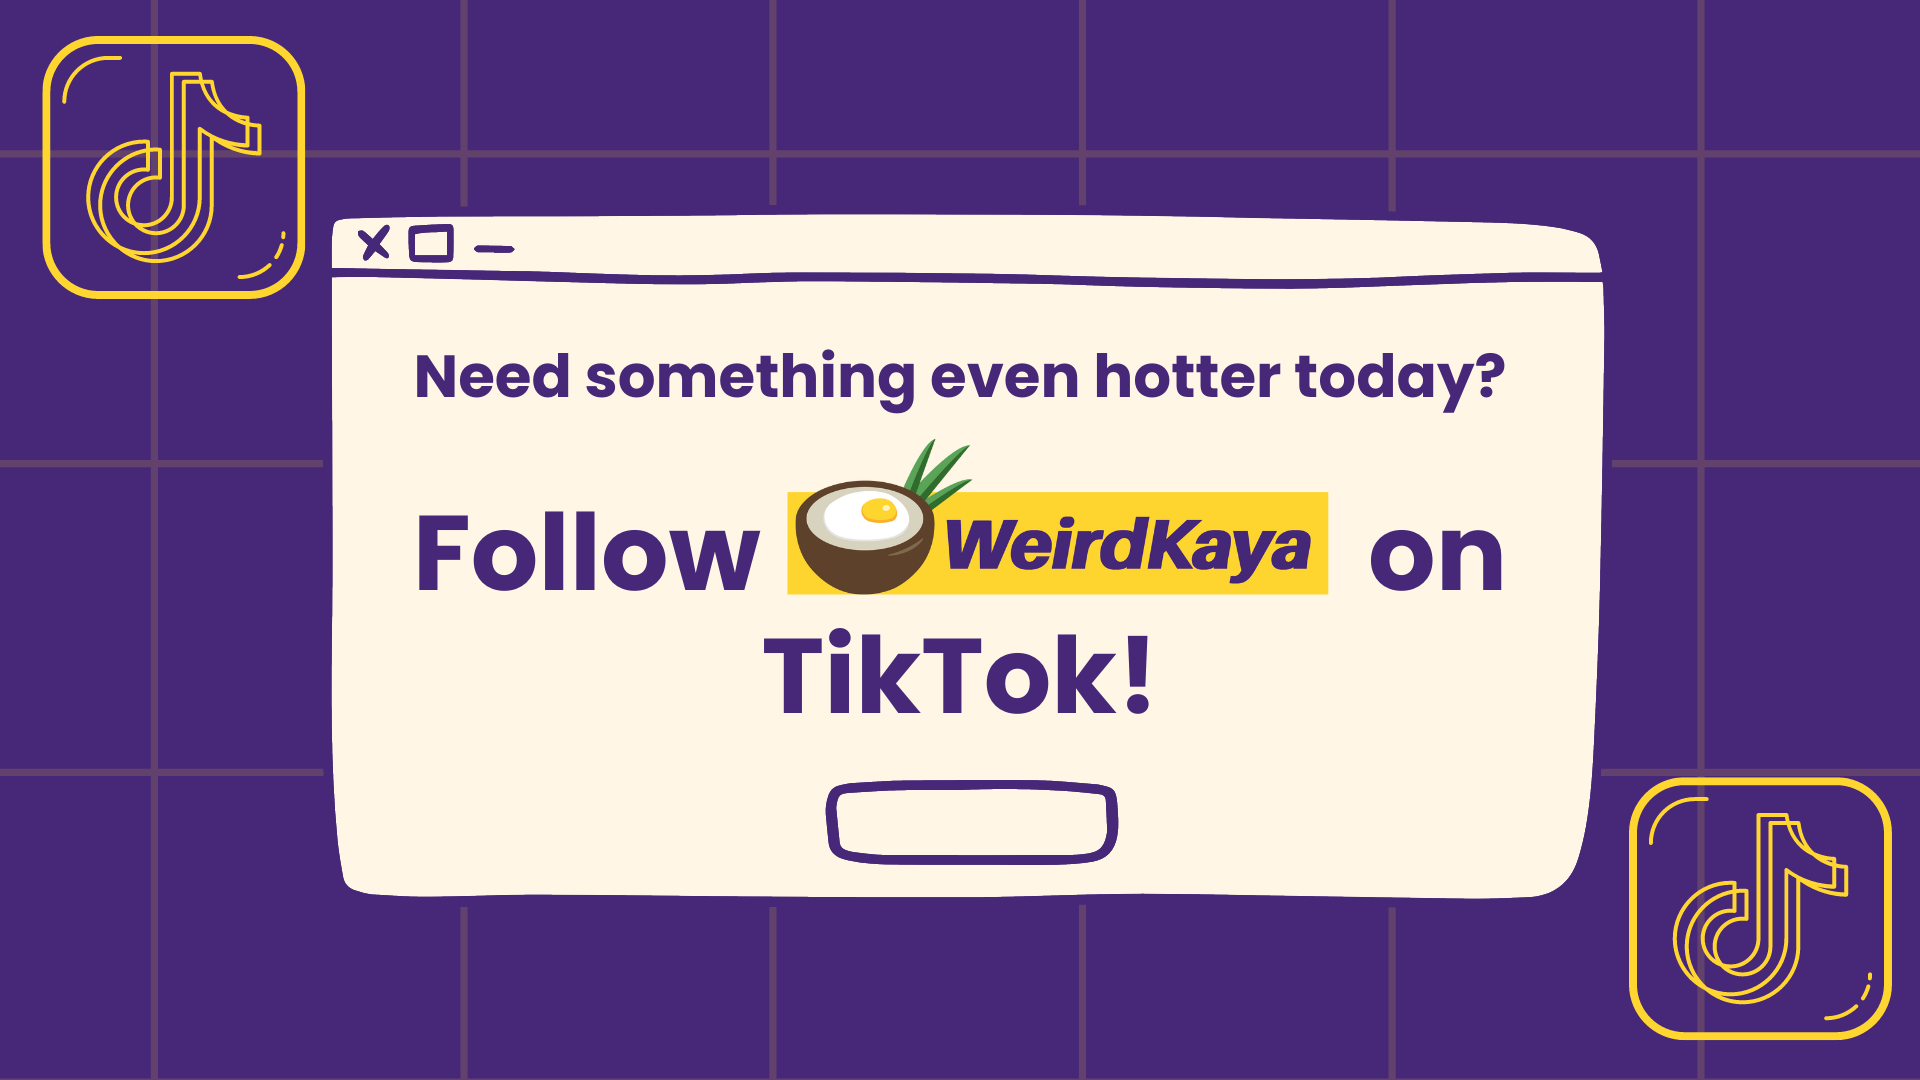 Weirdkaya is on tiktok!